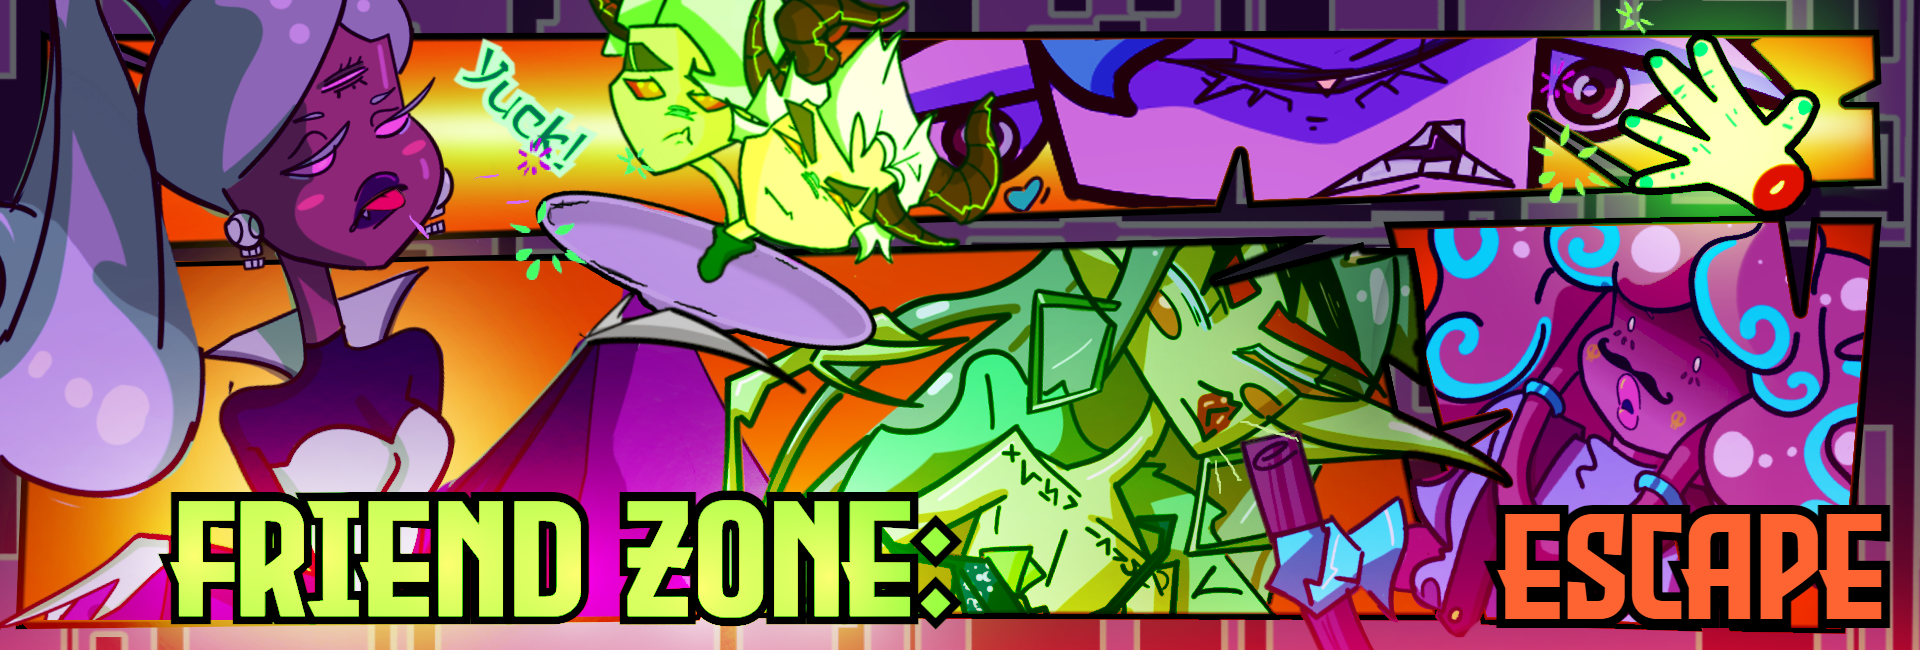 Friend Zone 5: Escape